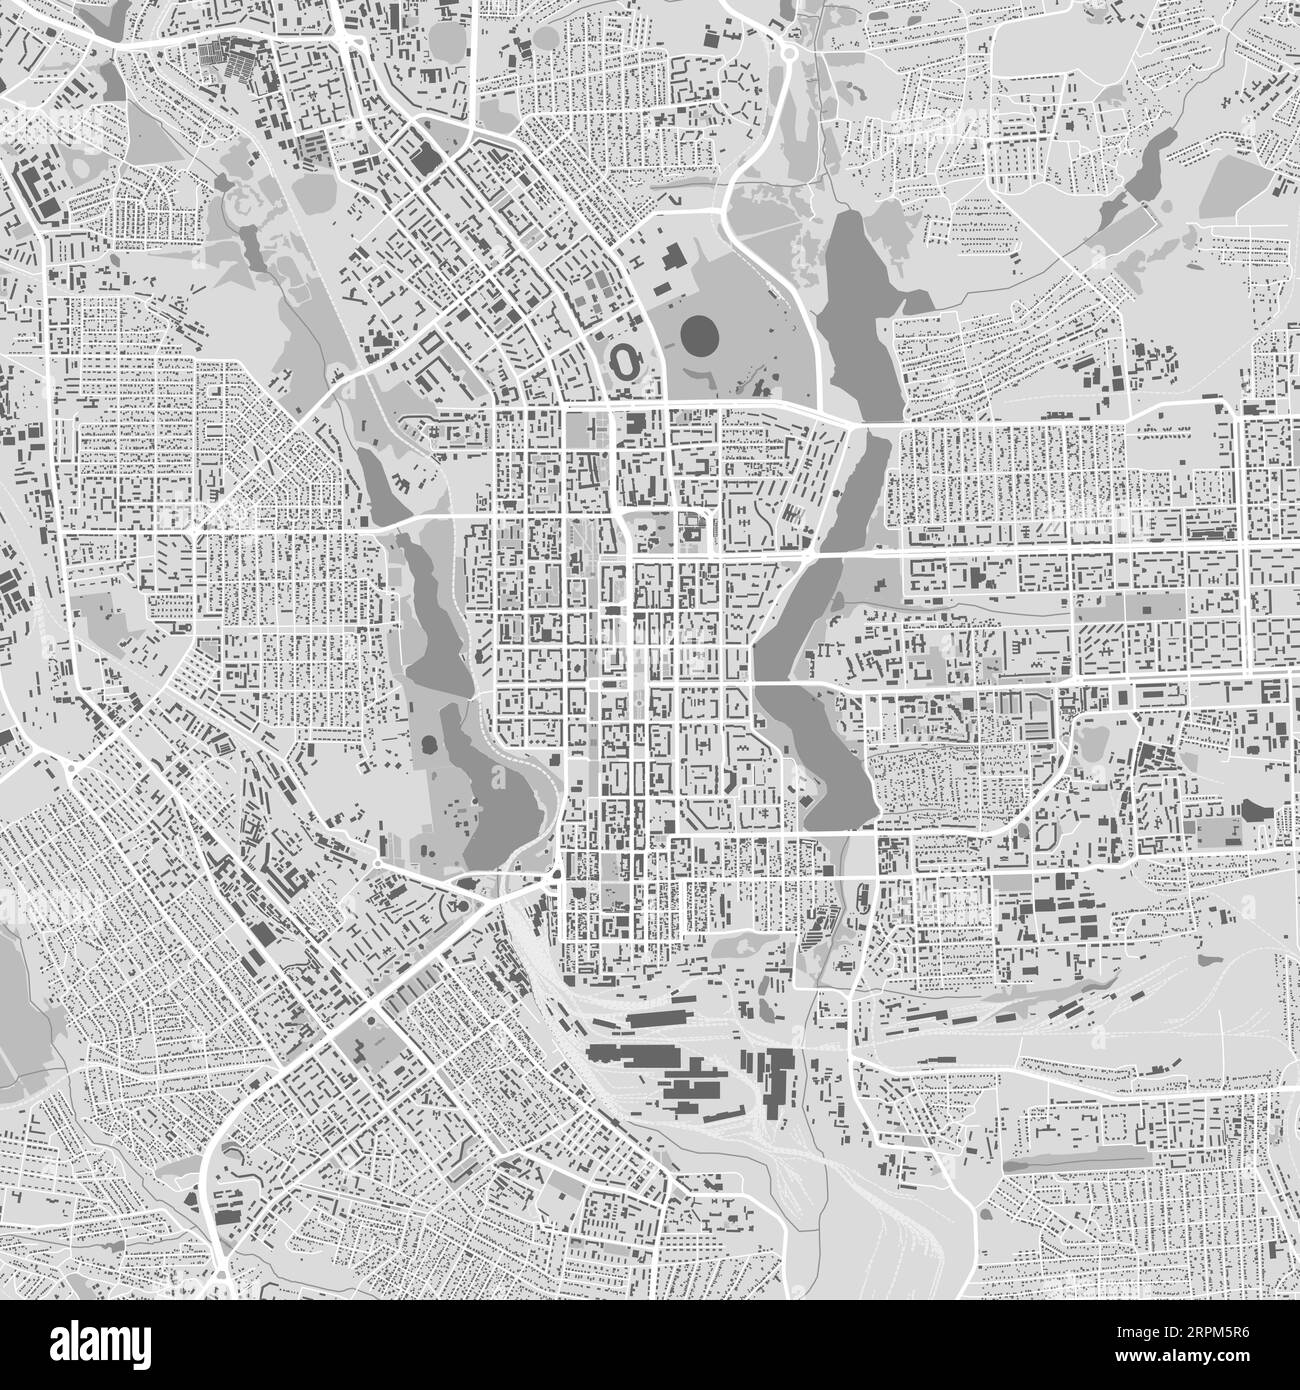 Donezk Stadtplan, Ukraine. Städtische Verwaltungskarte in Schwarz-weiß mit Flüssen und Straßen, Parks und Eisenbahnen. Vektorillustration. Stock Vektor